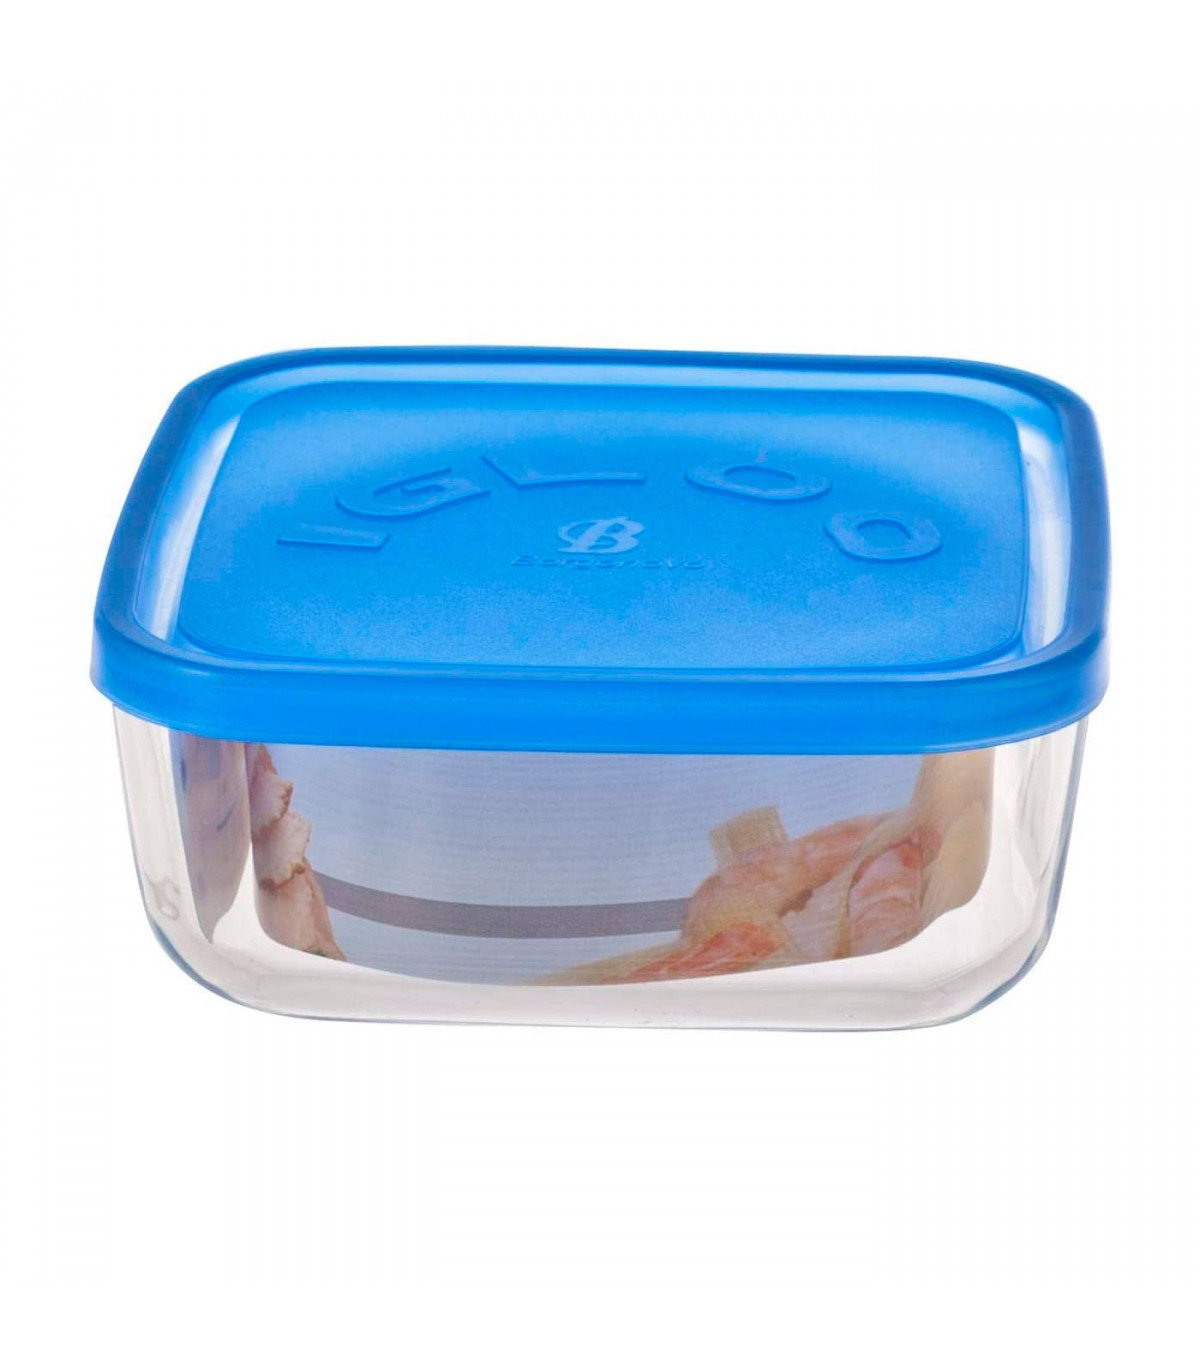 Aproximación líquido Mecánico Fiambrera cuadrada de vidrio 15 x 15 x 6,2 cm, modelo Igloo, tapa de  plástico azul, recipiente para alimentos apto para lavavaji